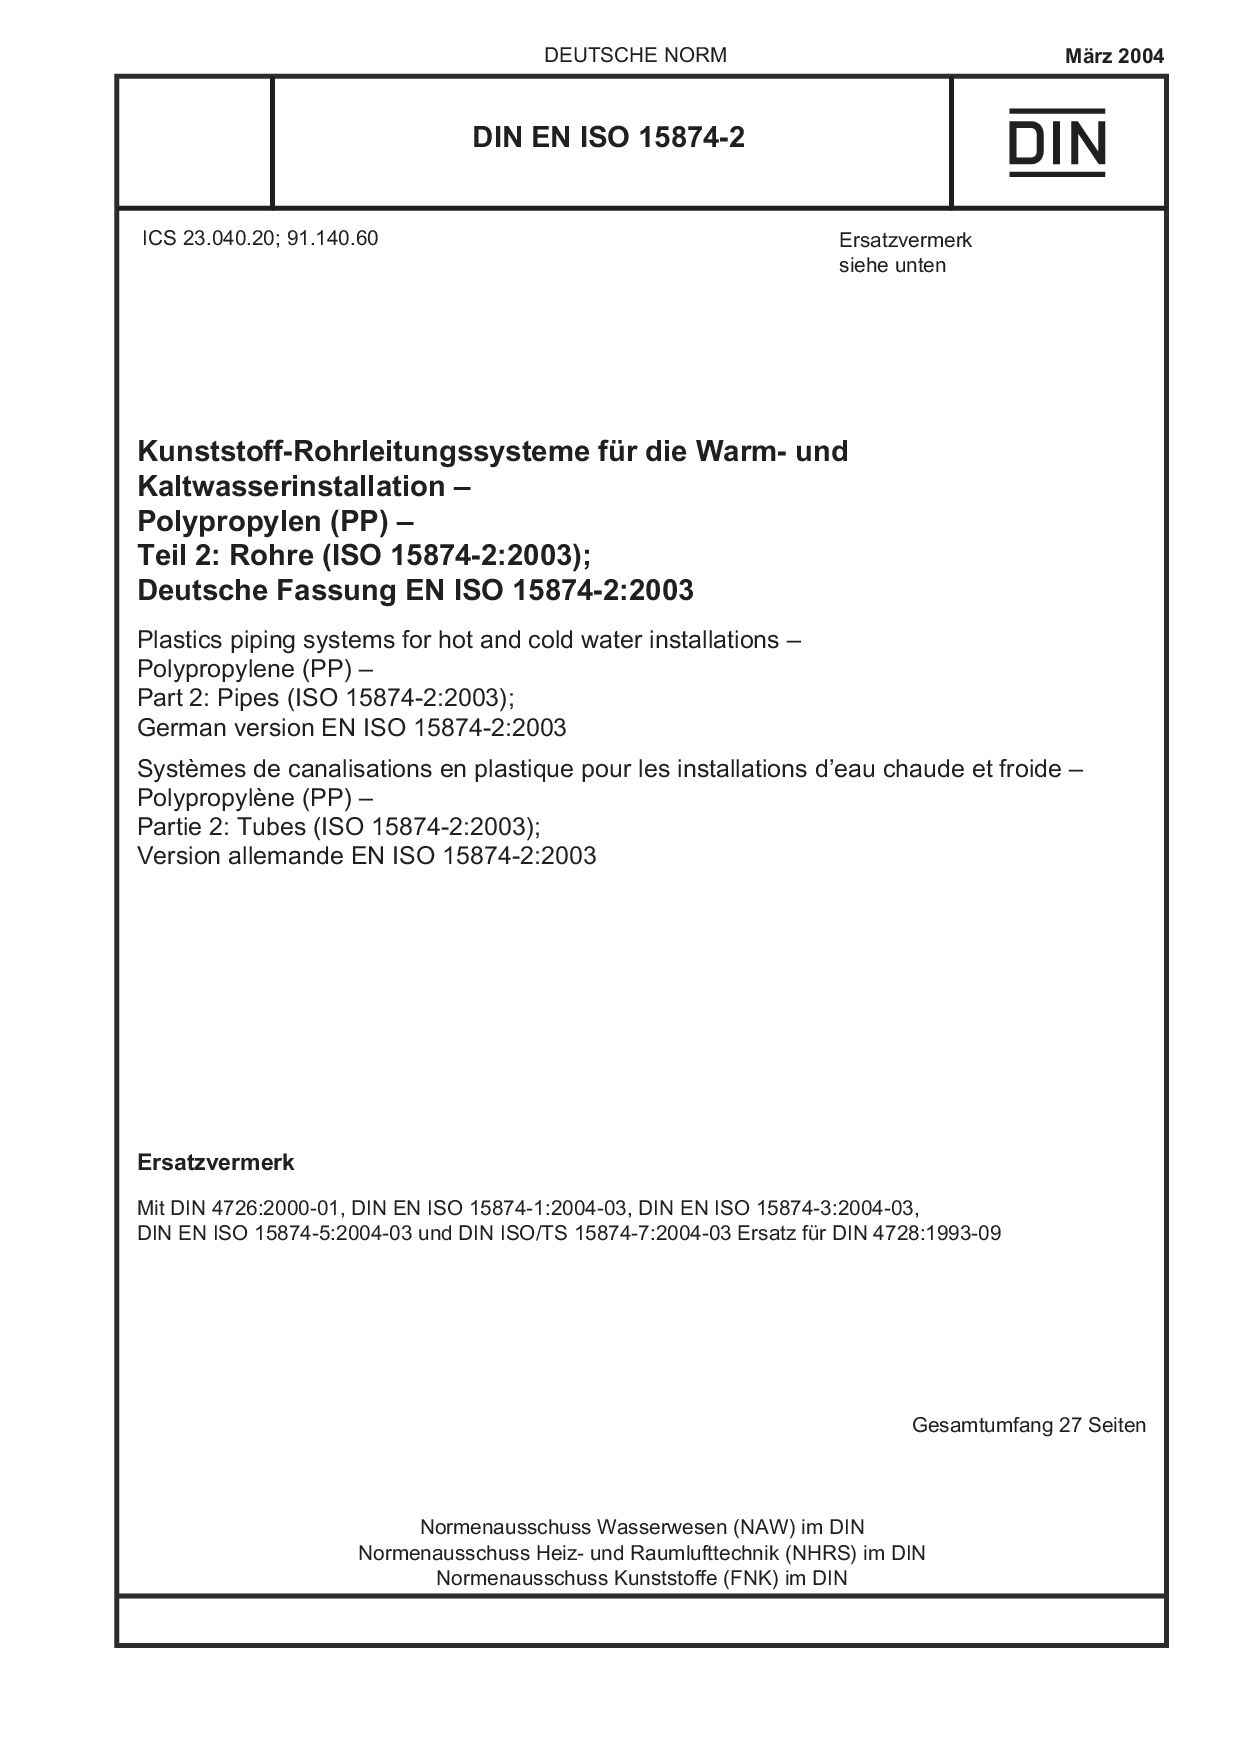 DIN EN ISO 15874-2:2004封面图